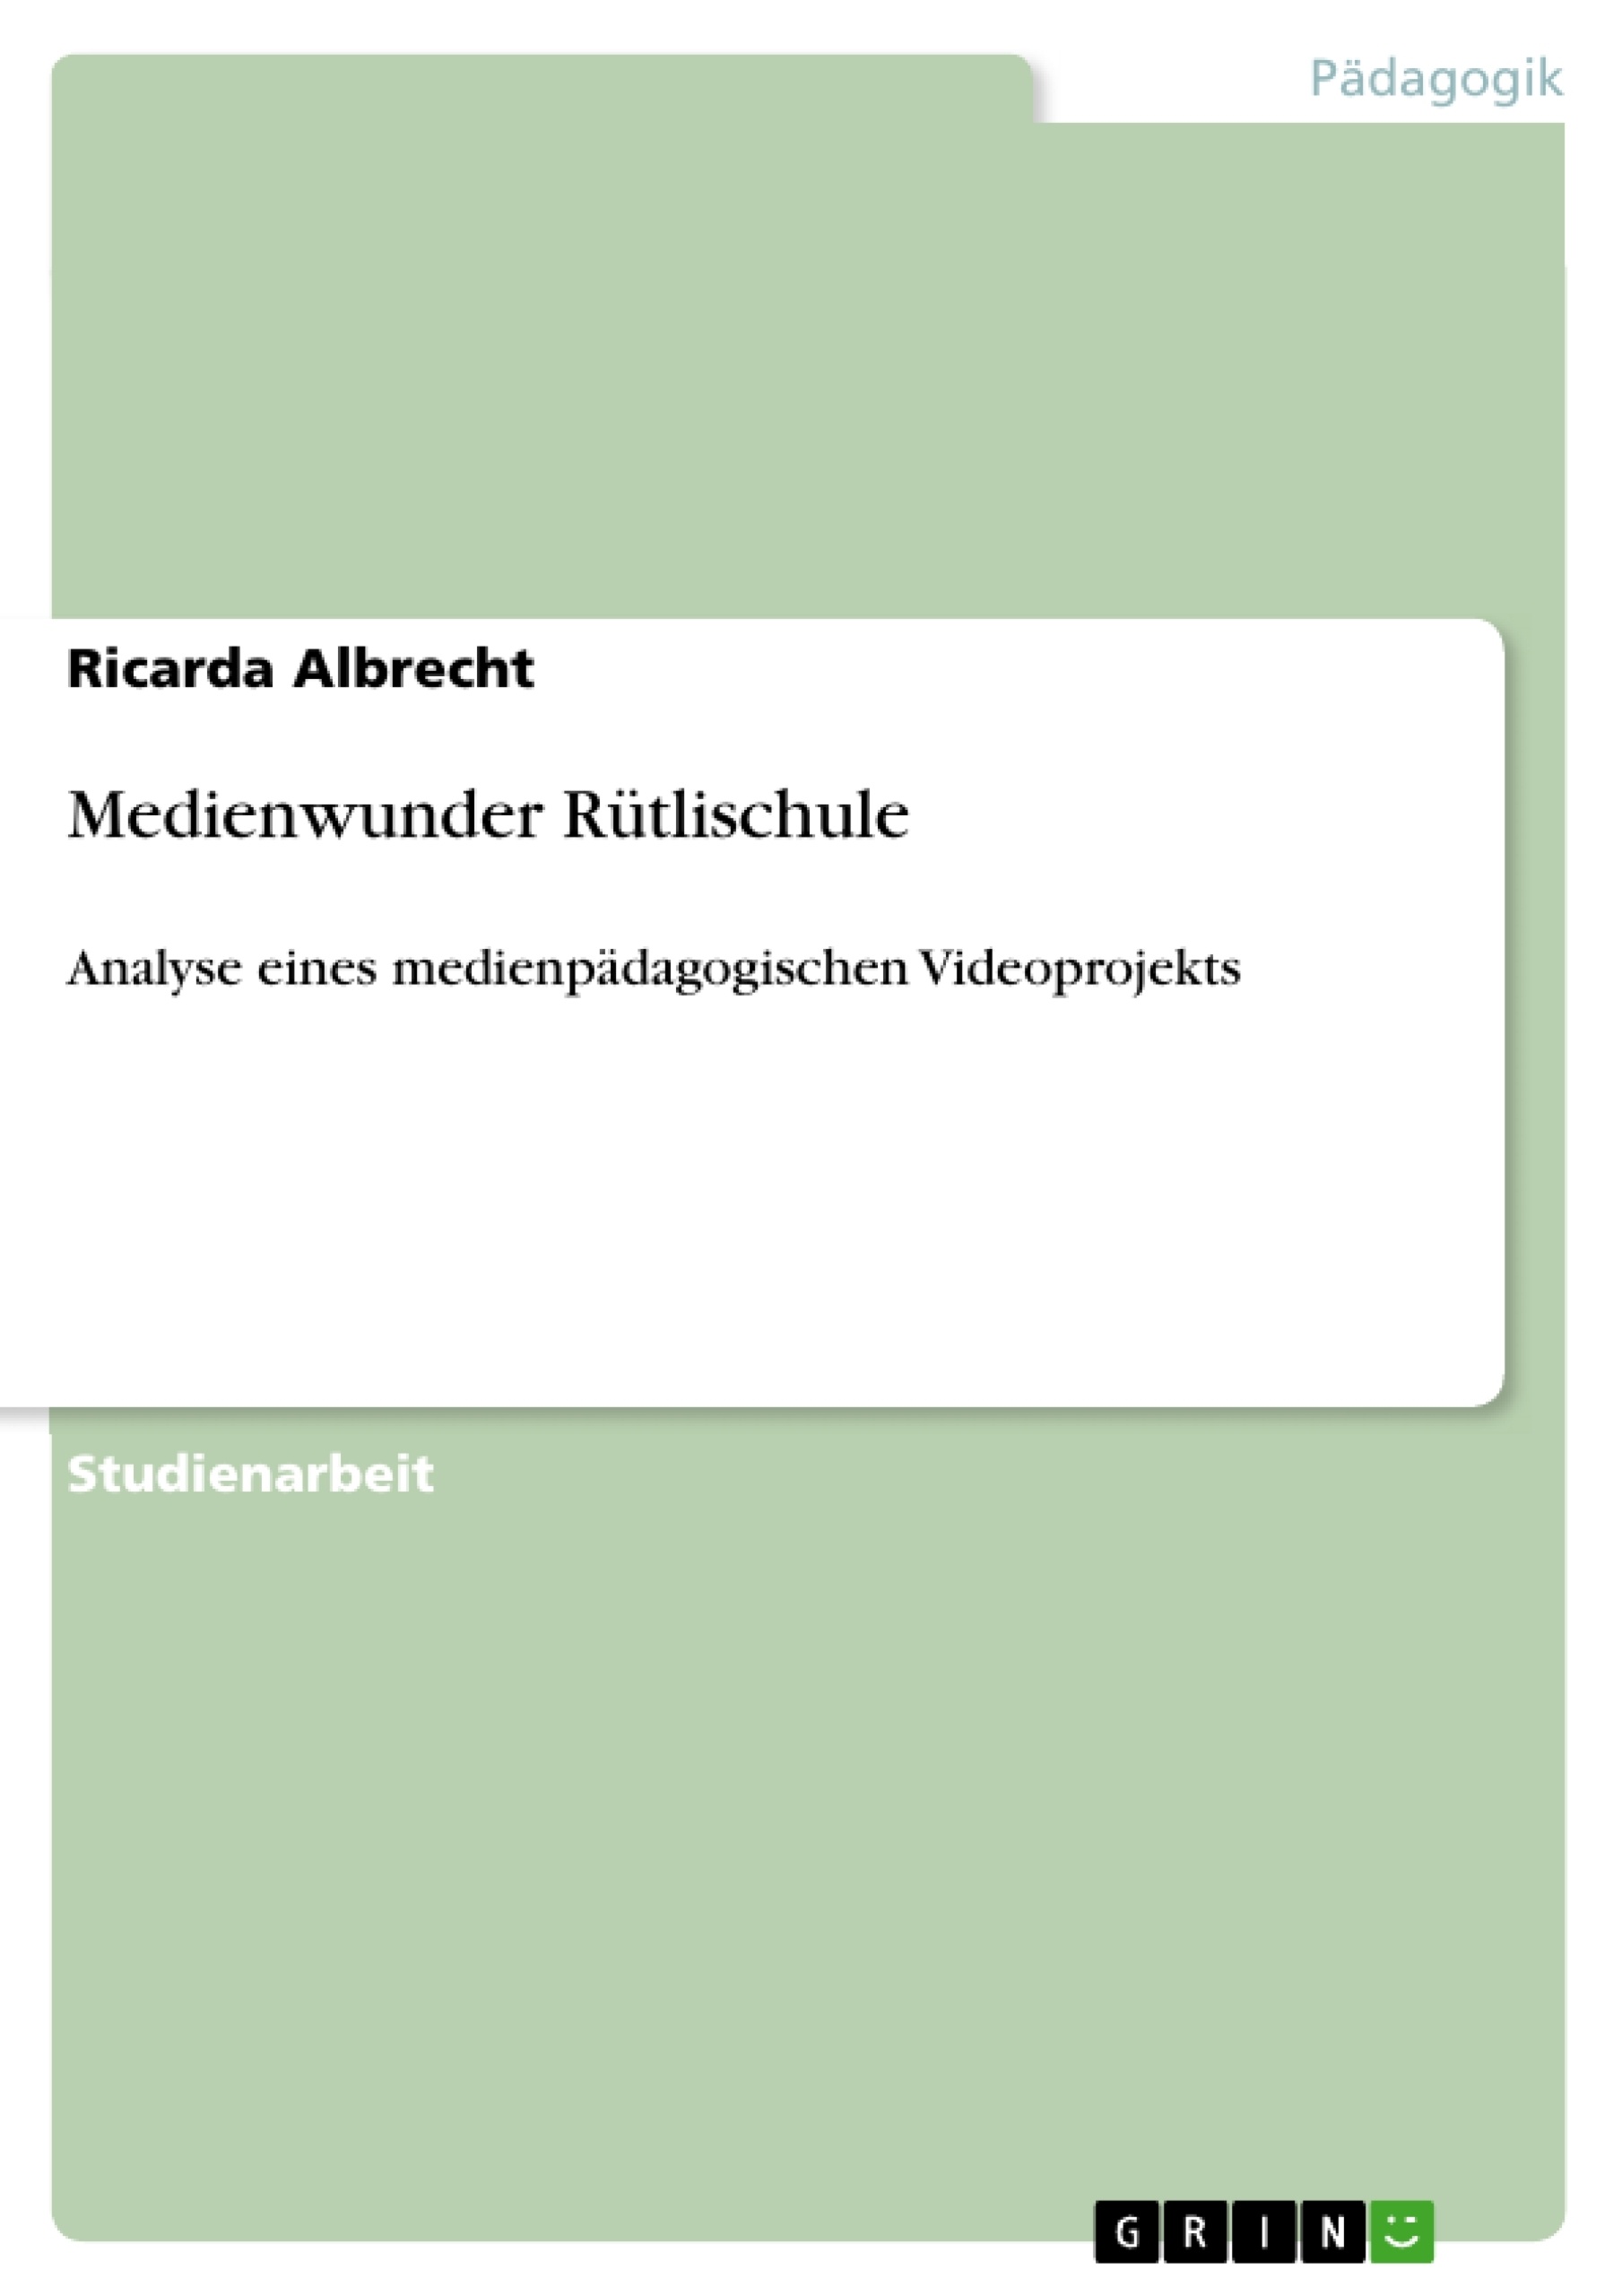 Title: Medienwunder Rütlischule